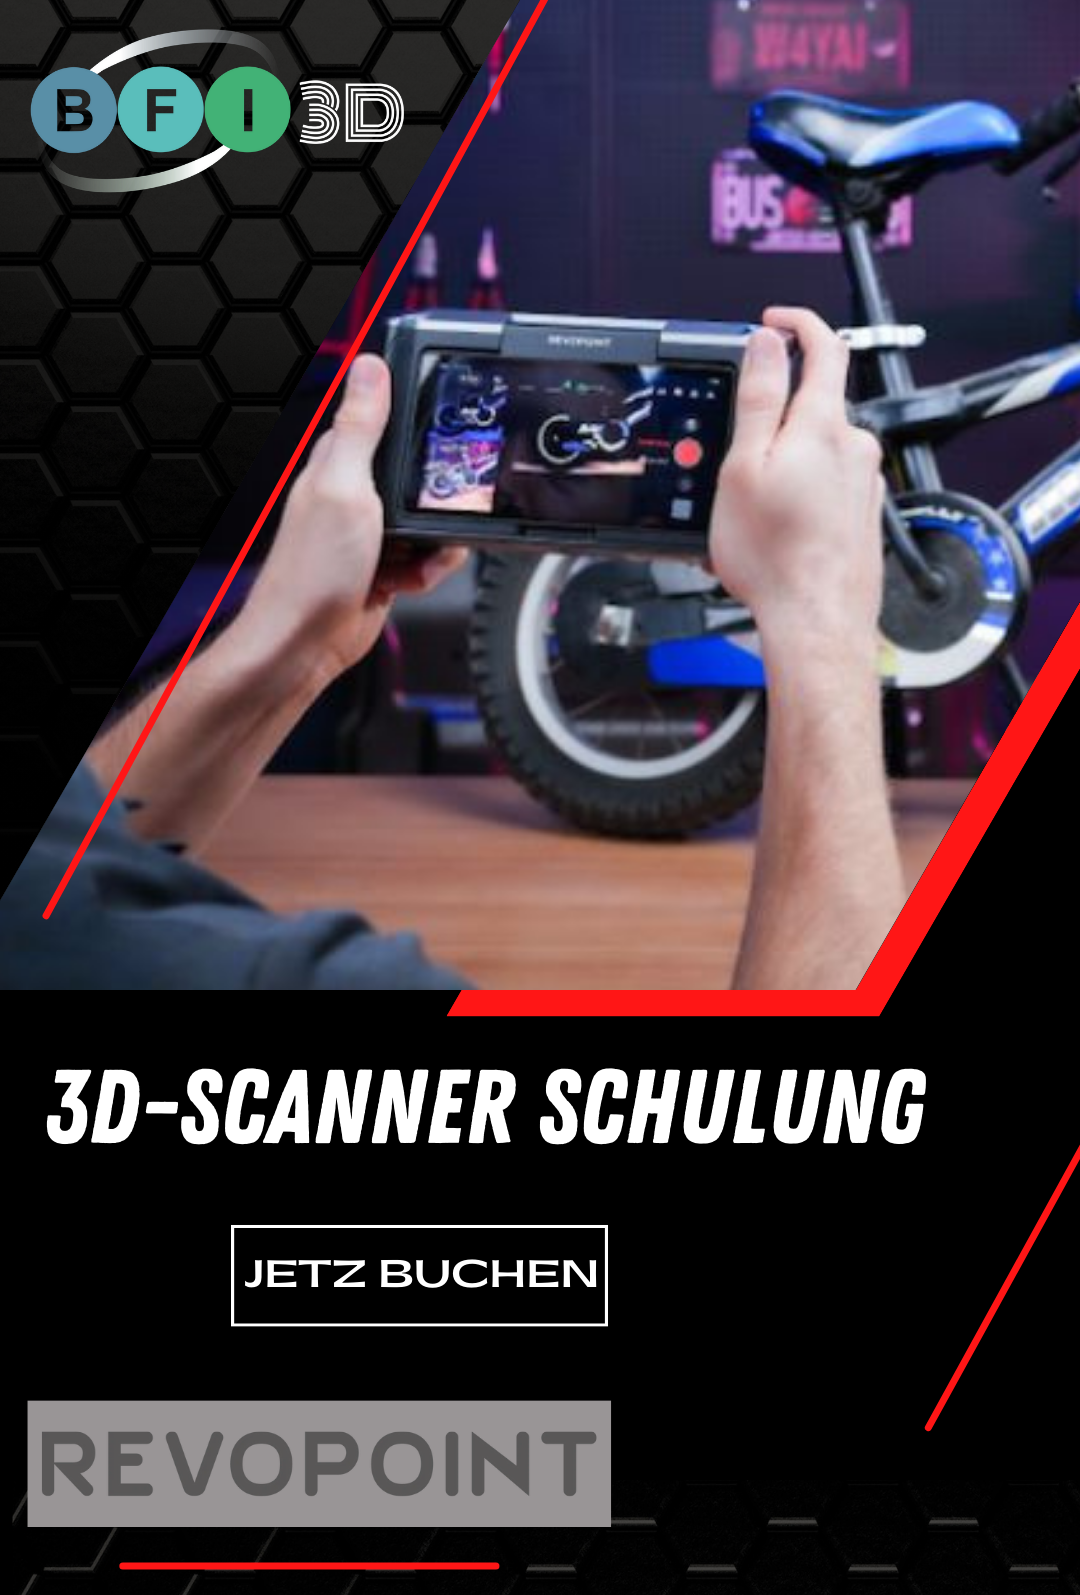 3D Scanner Schulung (Revopoint)